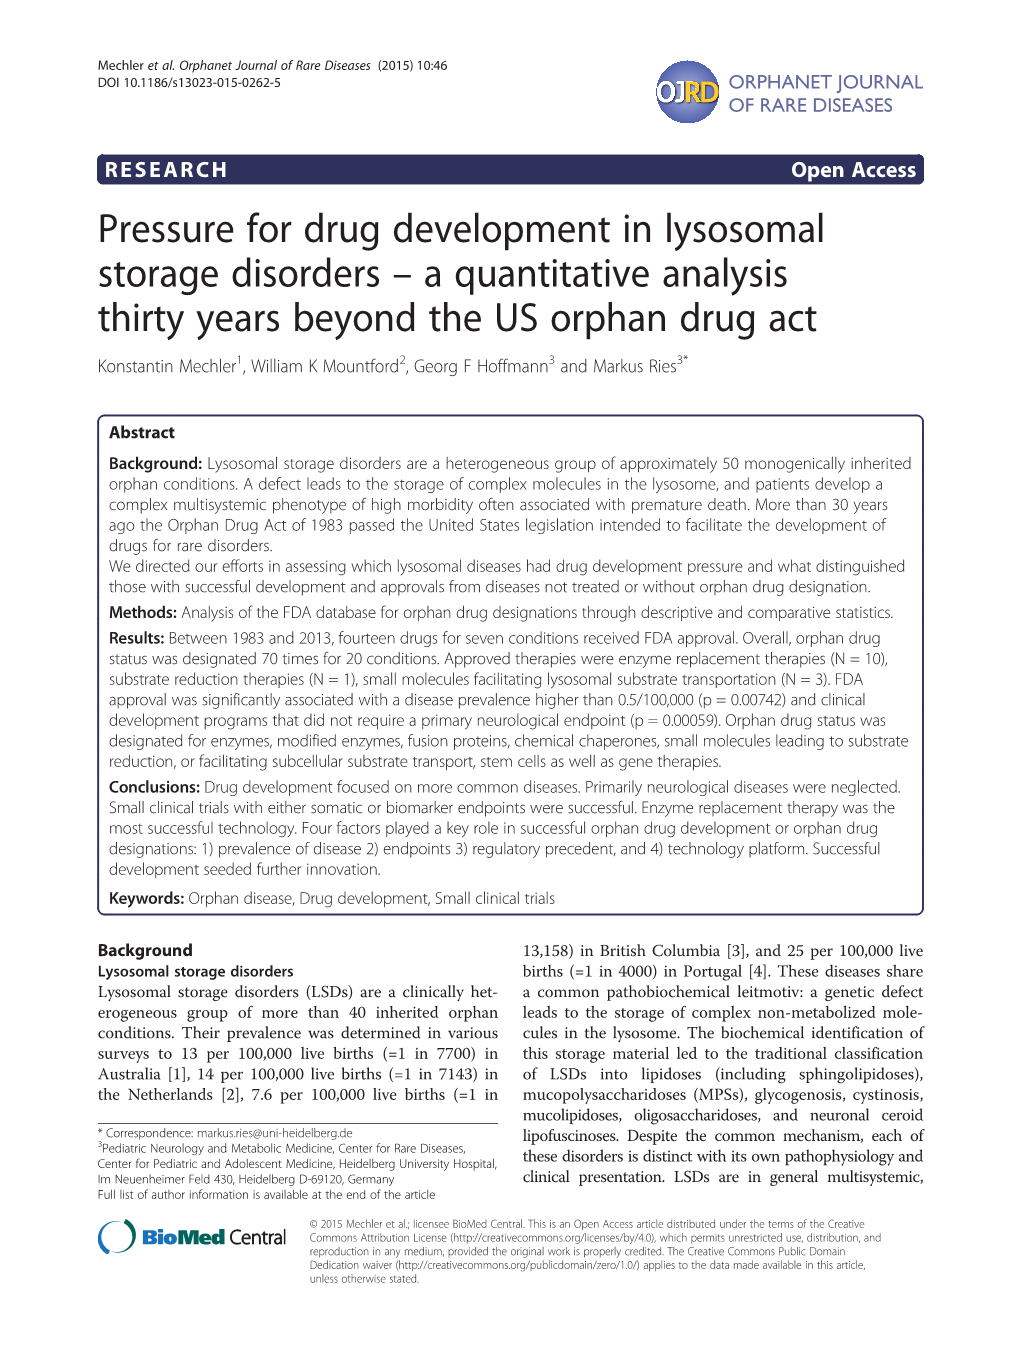 Pressure for Drug Development in Lysosomal Storage